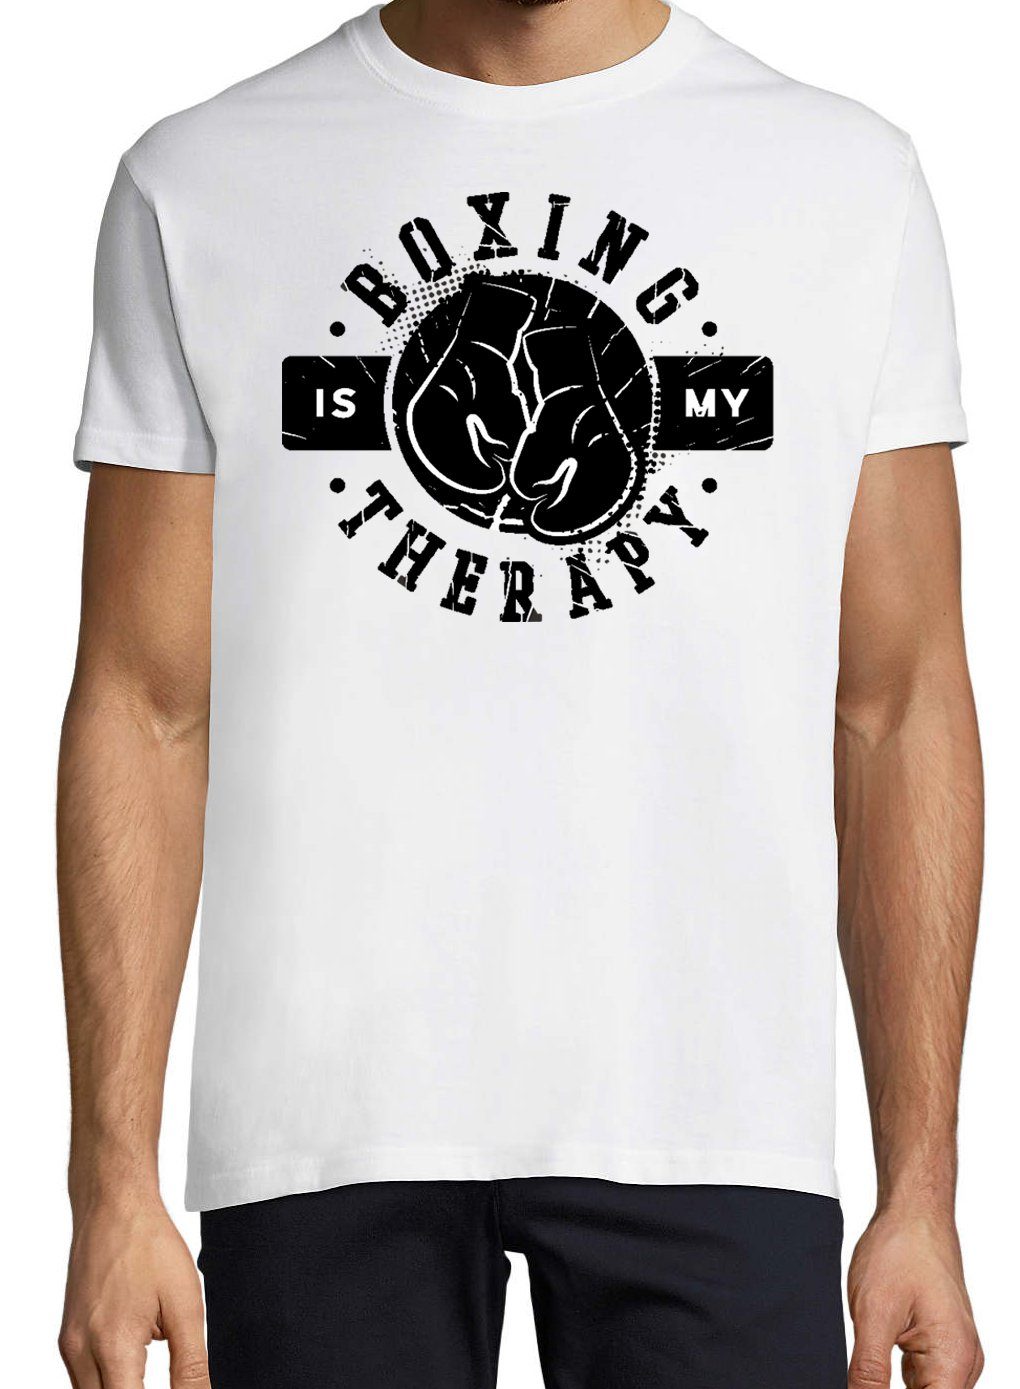 Herren Weiß Boxen Youth Is mit Designz trendigem Shirt Frontprint My Therapie T-Shirt